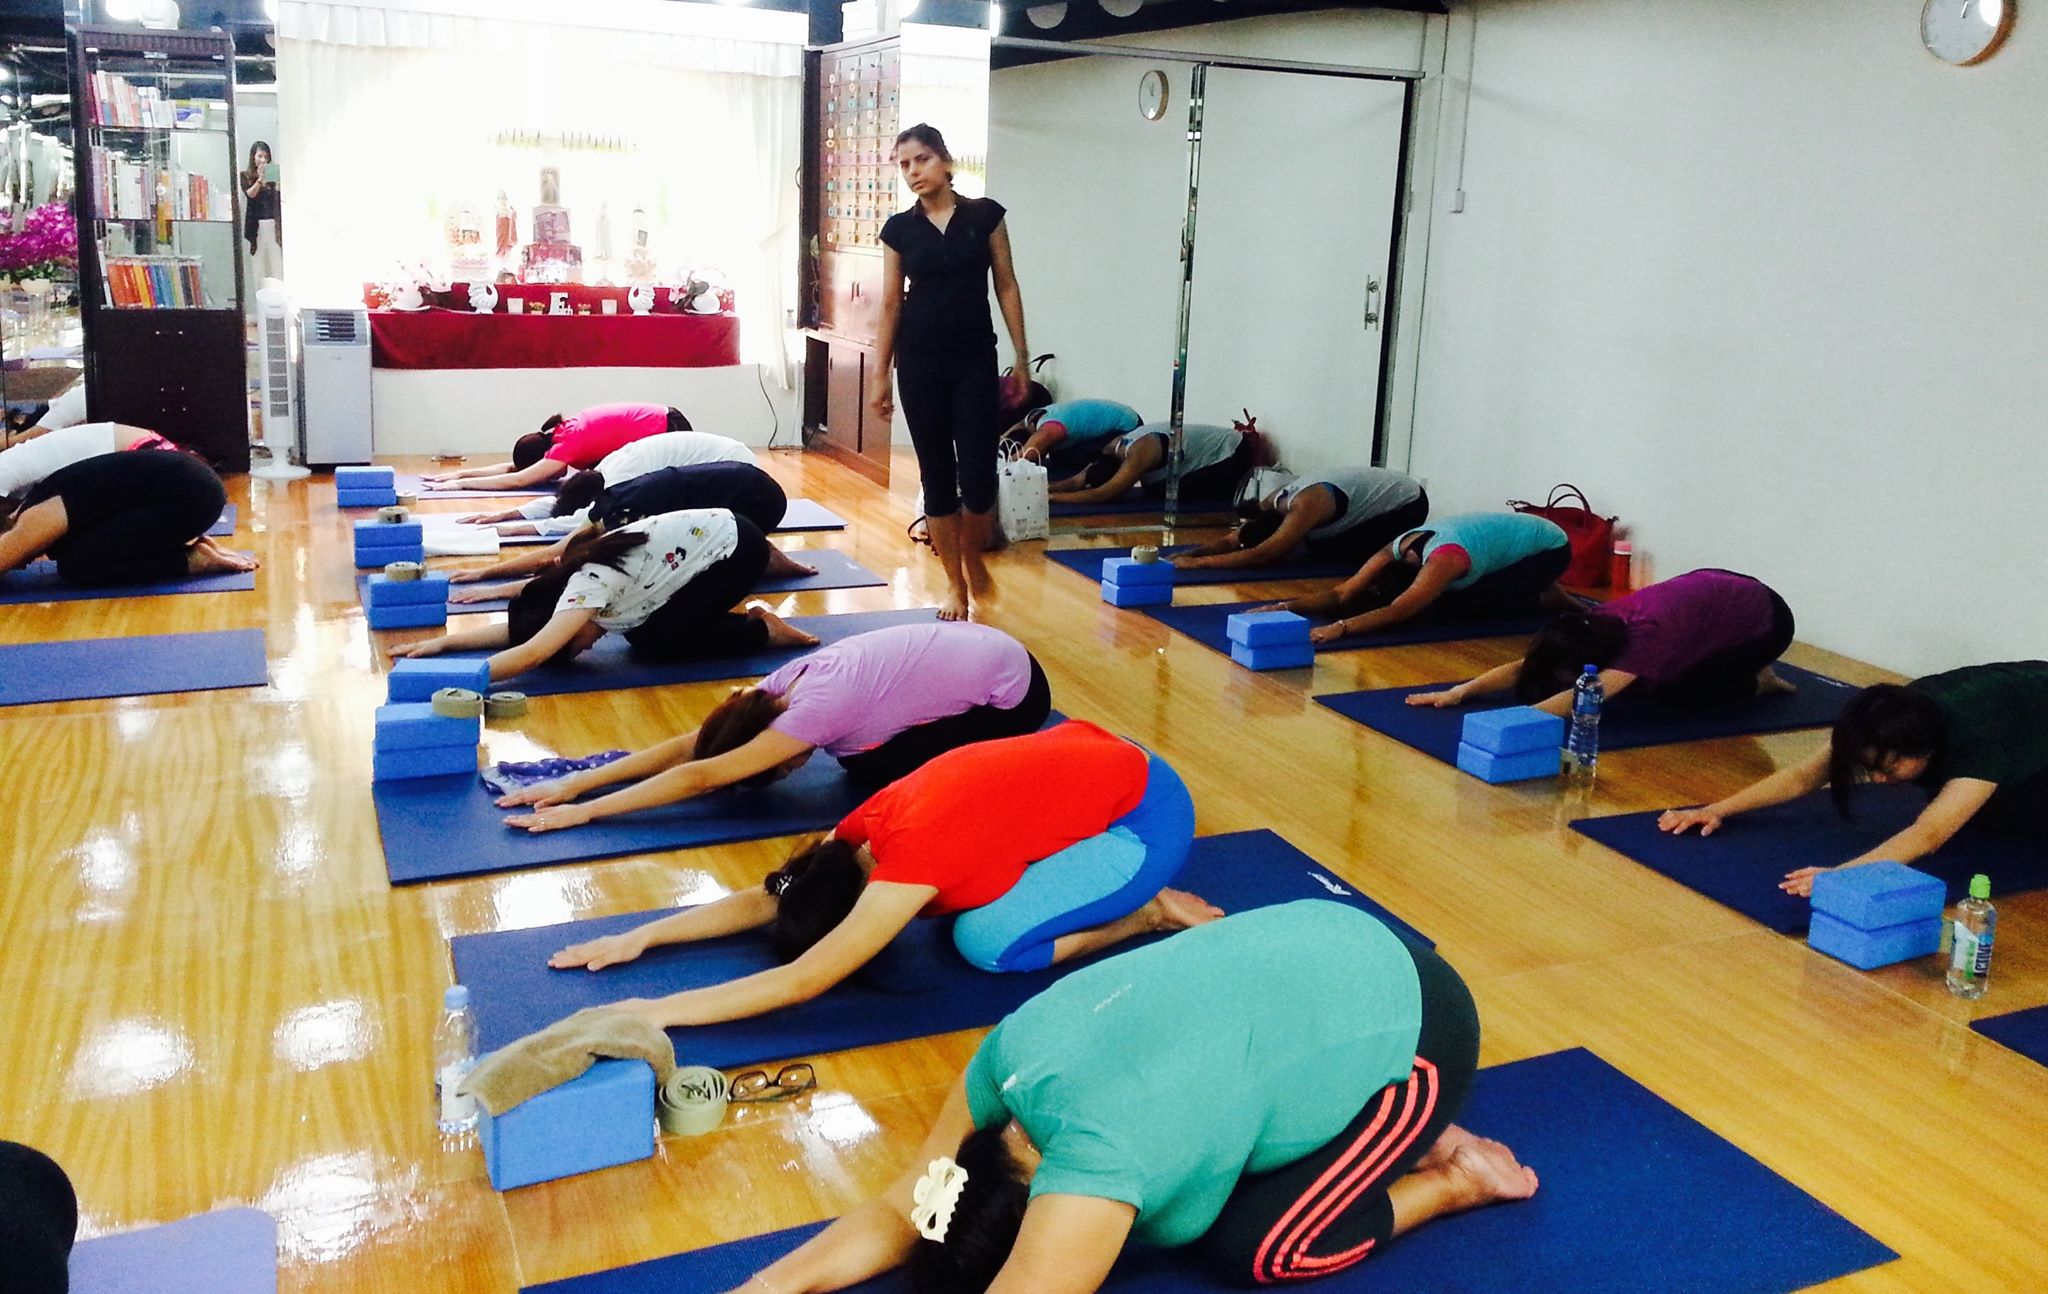 yoga practice at yoga life–vedanta wellness studio in macau